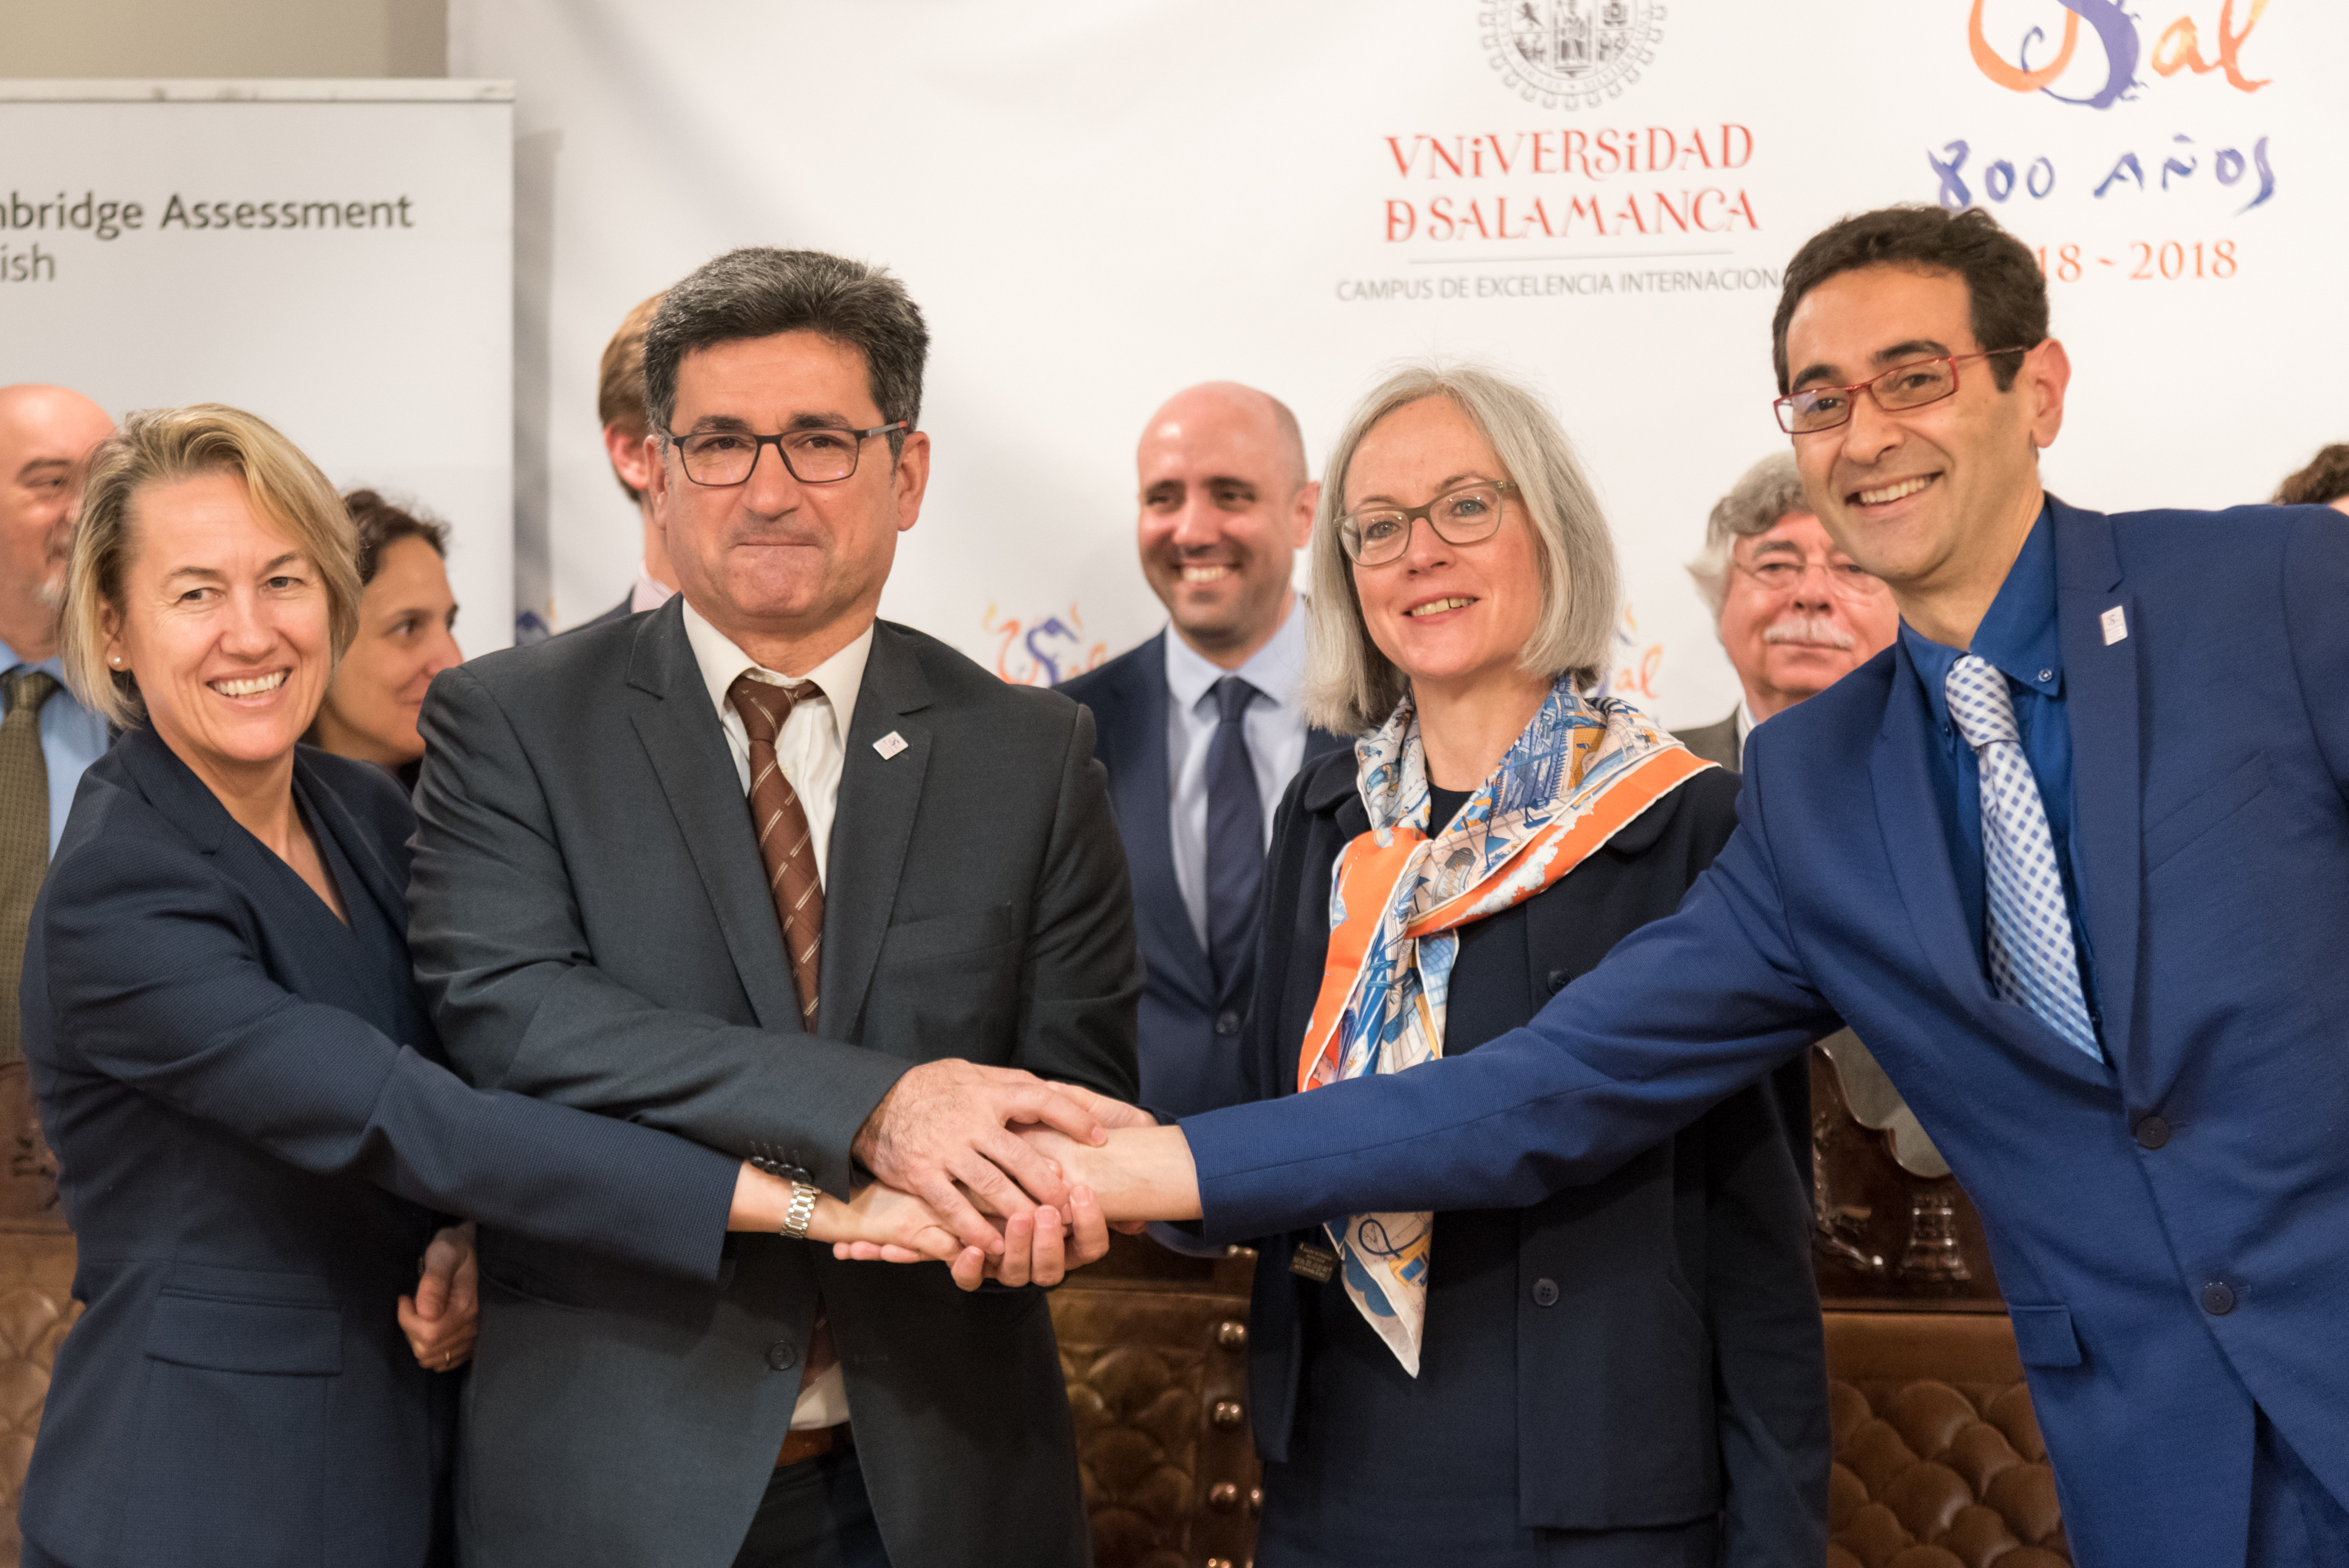 Las universidades de Salamanca y Cambridge afianzan su colaboración con la firma de un nuevo acuerdo para la certificación de idiomas